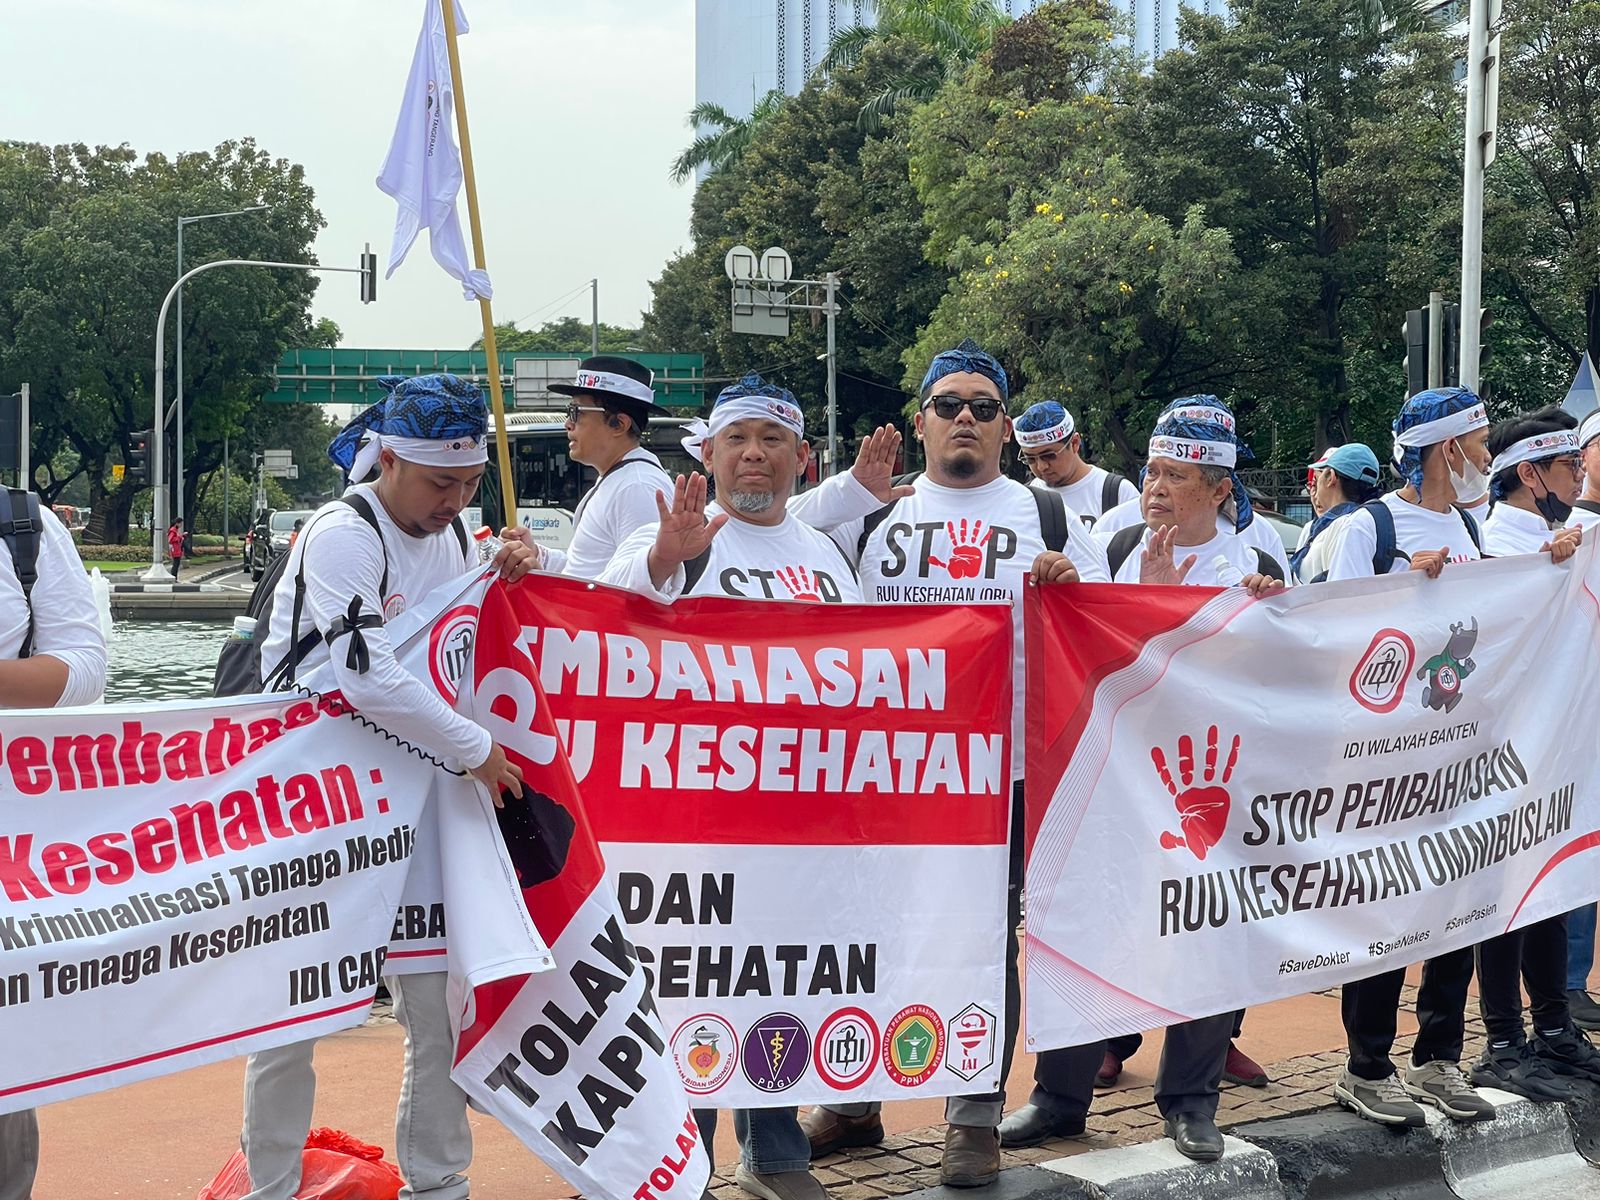 IDI Cabang Tangerang Dan Banten Berunjuk Rasa di Monas Minta RUU Kesehatan Dibatalkan Bantengate.id